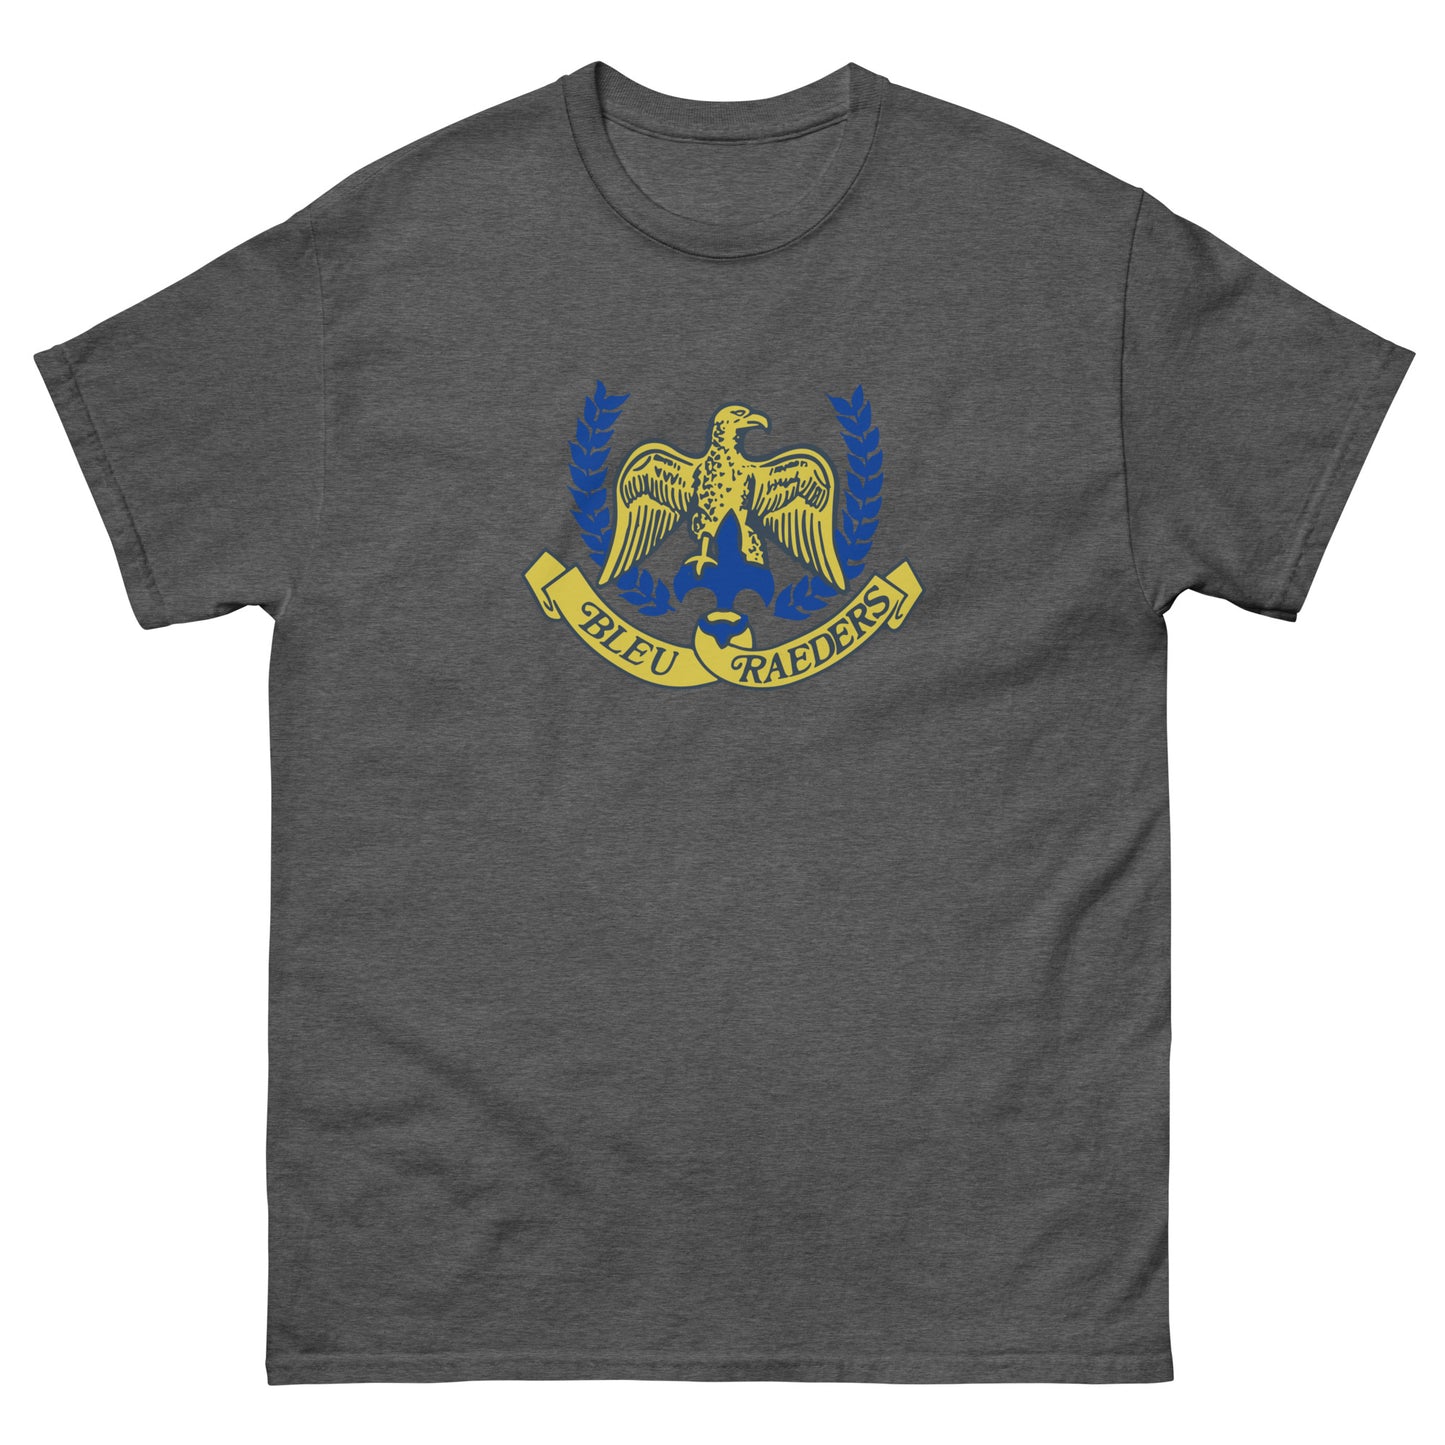 Bleu Raeders T-Shirt